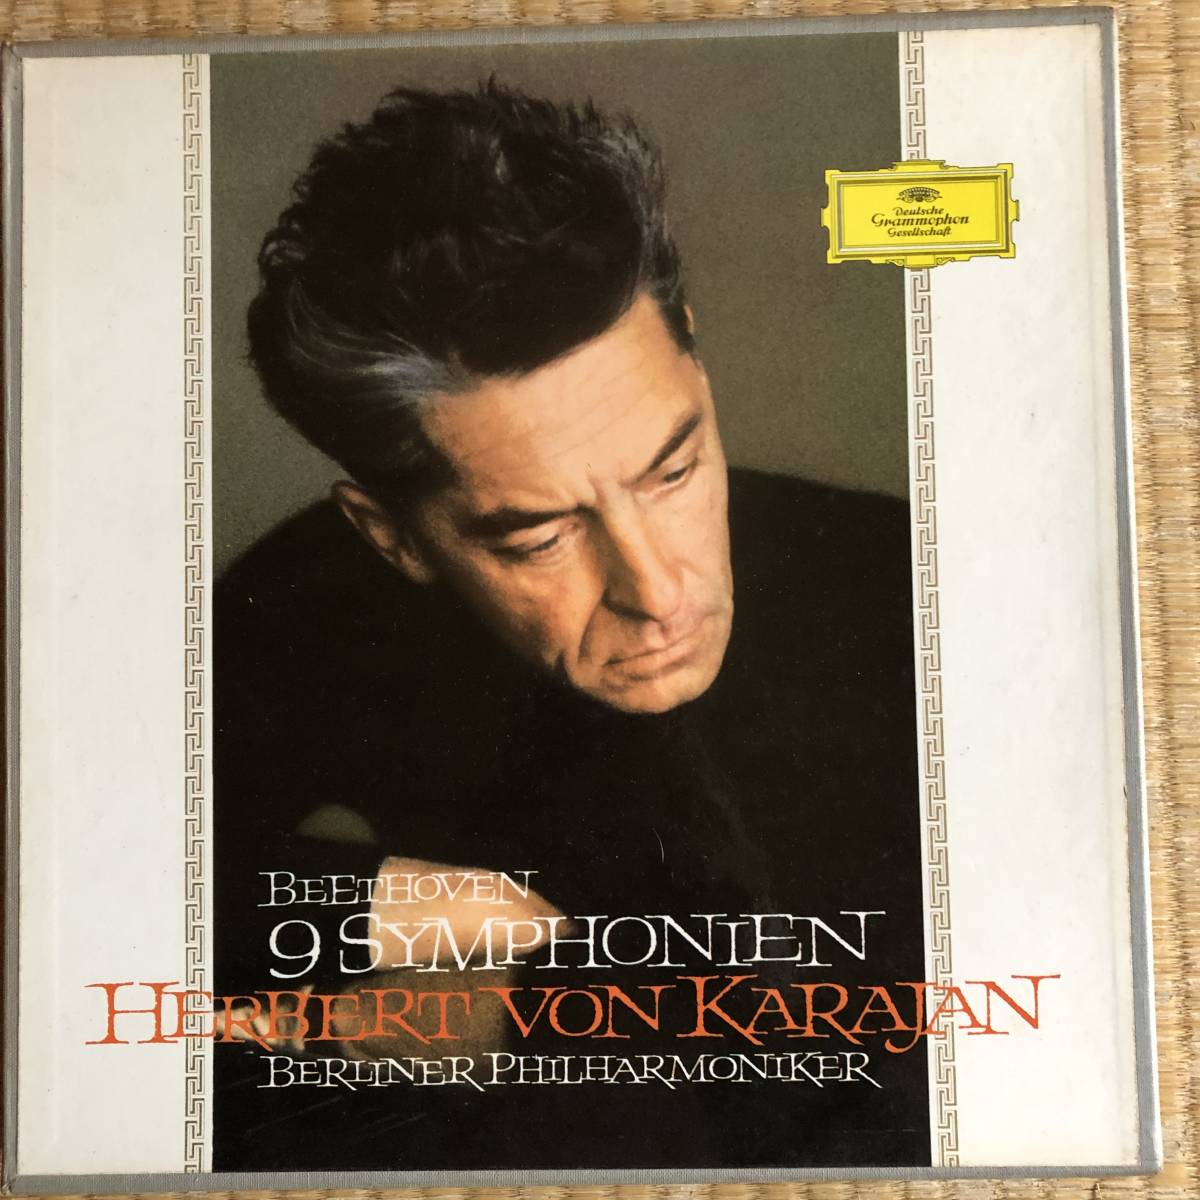 最高の品質 ベートーヴェン交響曲全集 8枚セット 12インチLP